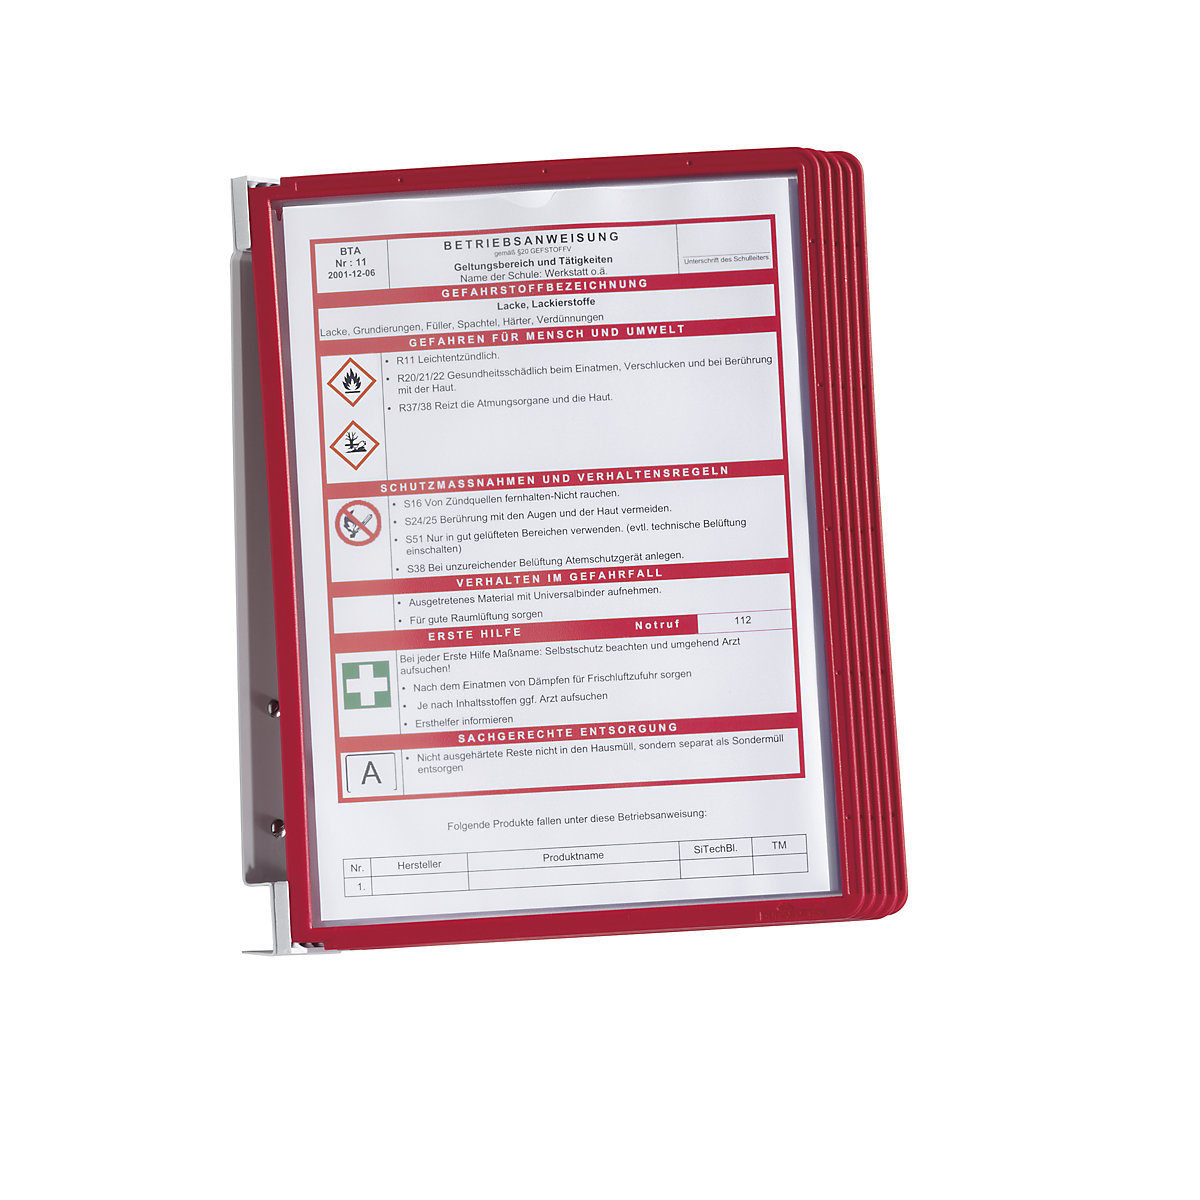 Nástěnný držák – kompletní souprava – DURABLE, 5 průhledných tabulek DIN A4, bal.j. 2 ks, červený rámeček, od 3 bal.j.-2